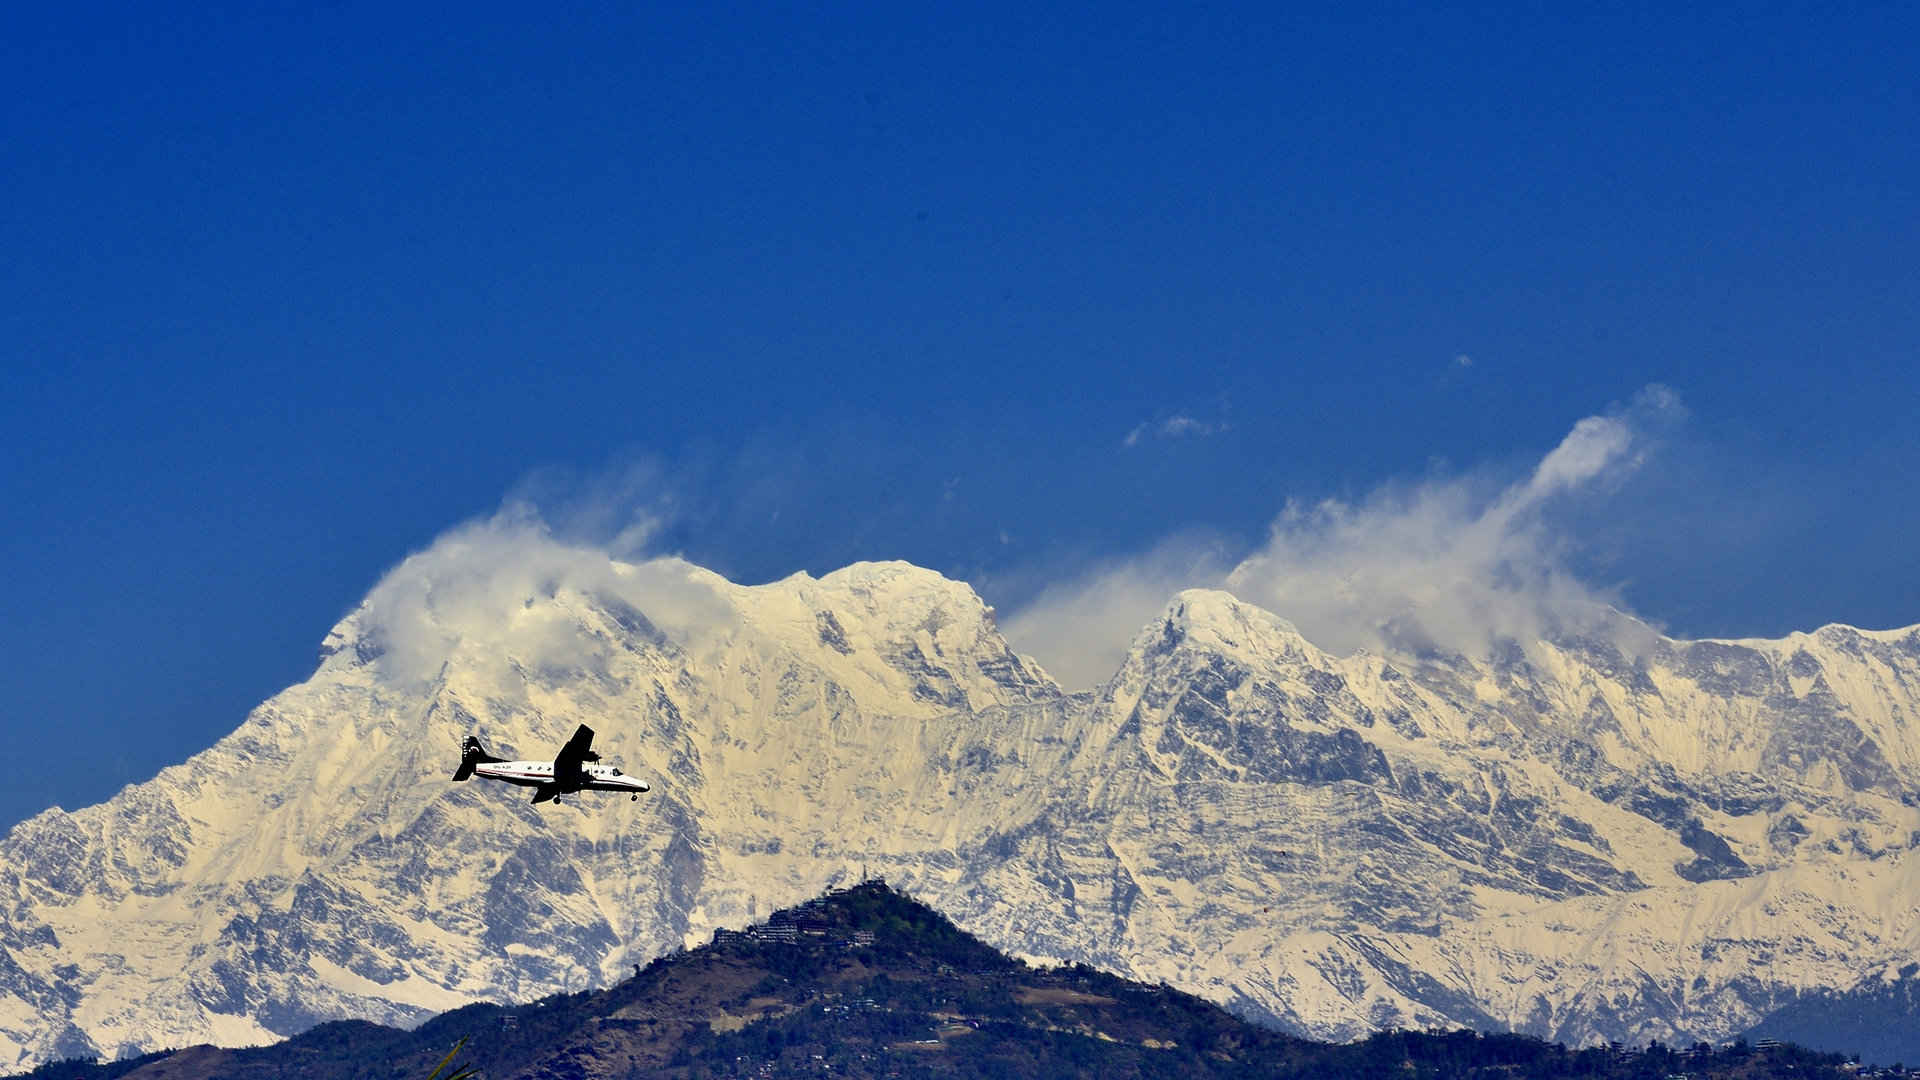 尼泊尔雪山风景壁纸图片-